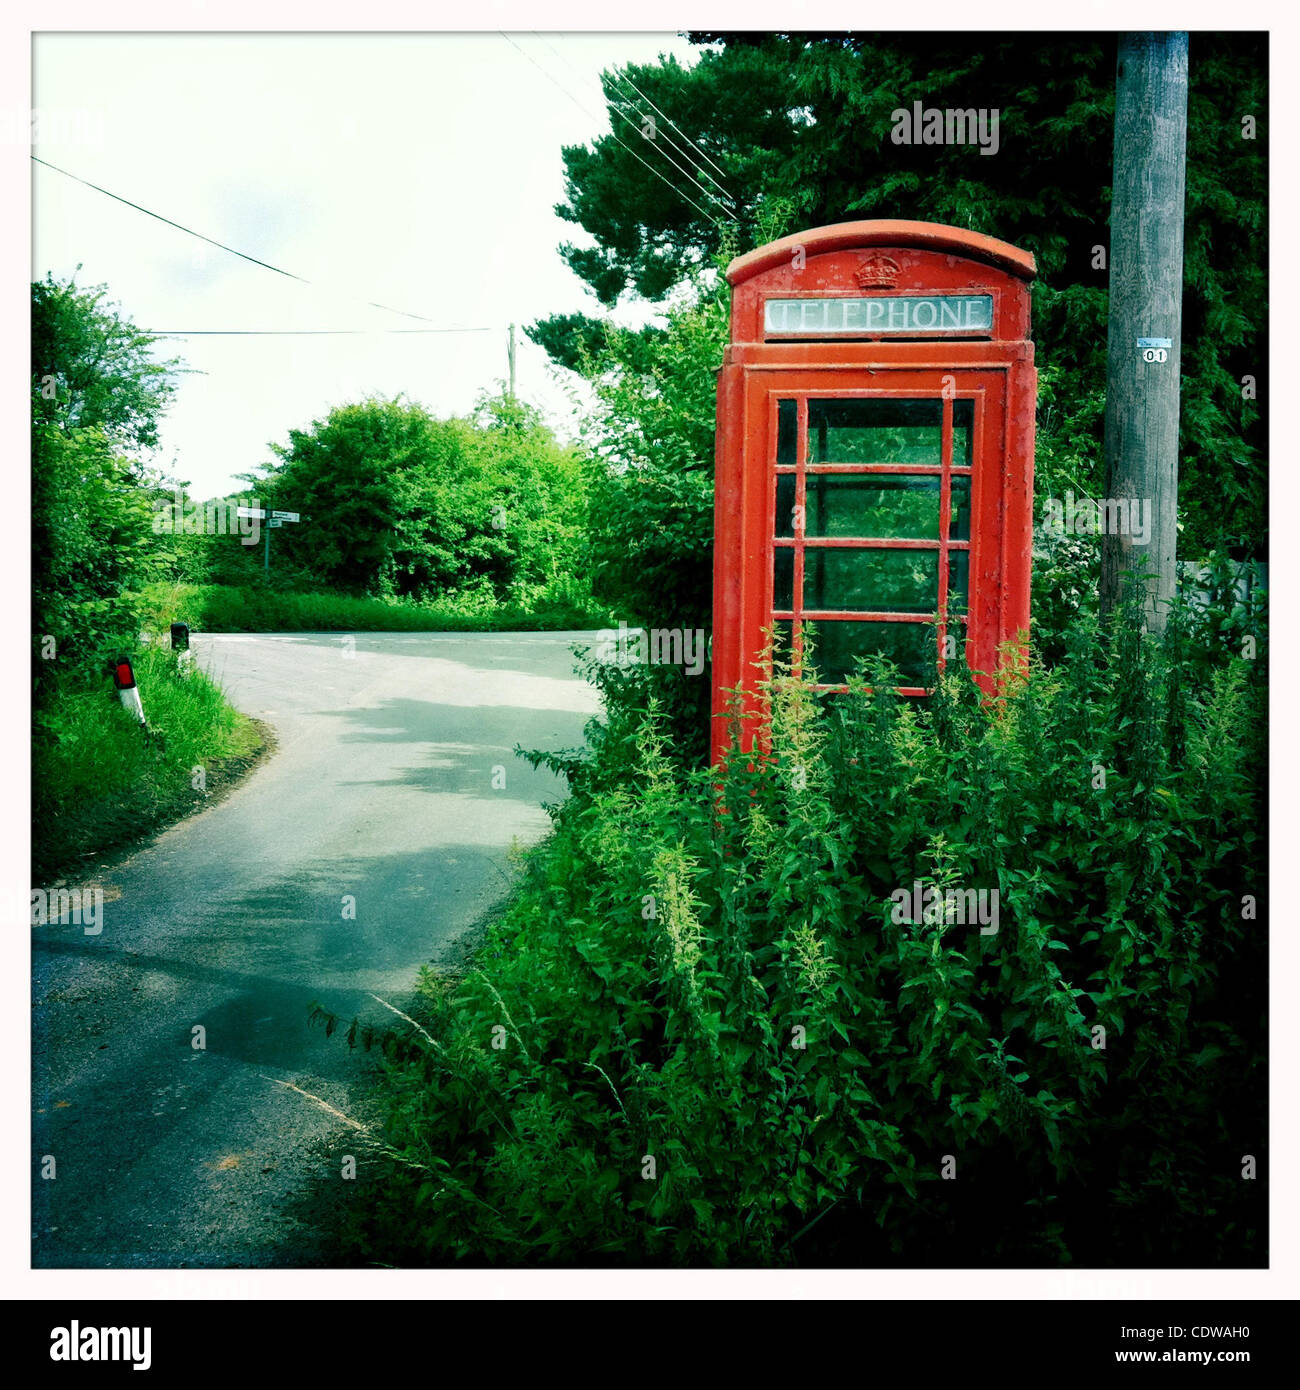 09 juillet 2011 - Peu de Great Horkesley, Royaume-Uni - téléphone rouge iconique fort sur un côté de la route, peu de Great Horkesley, UK. (Crédit Image : &# 169 ; Veronika Lukasova/ZUMAPRESS.com) Banque D'Images